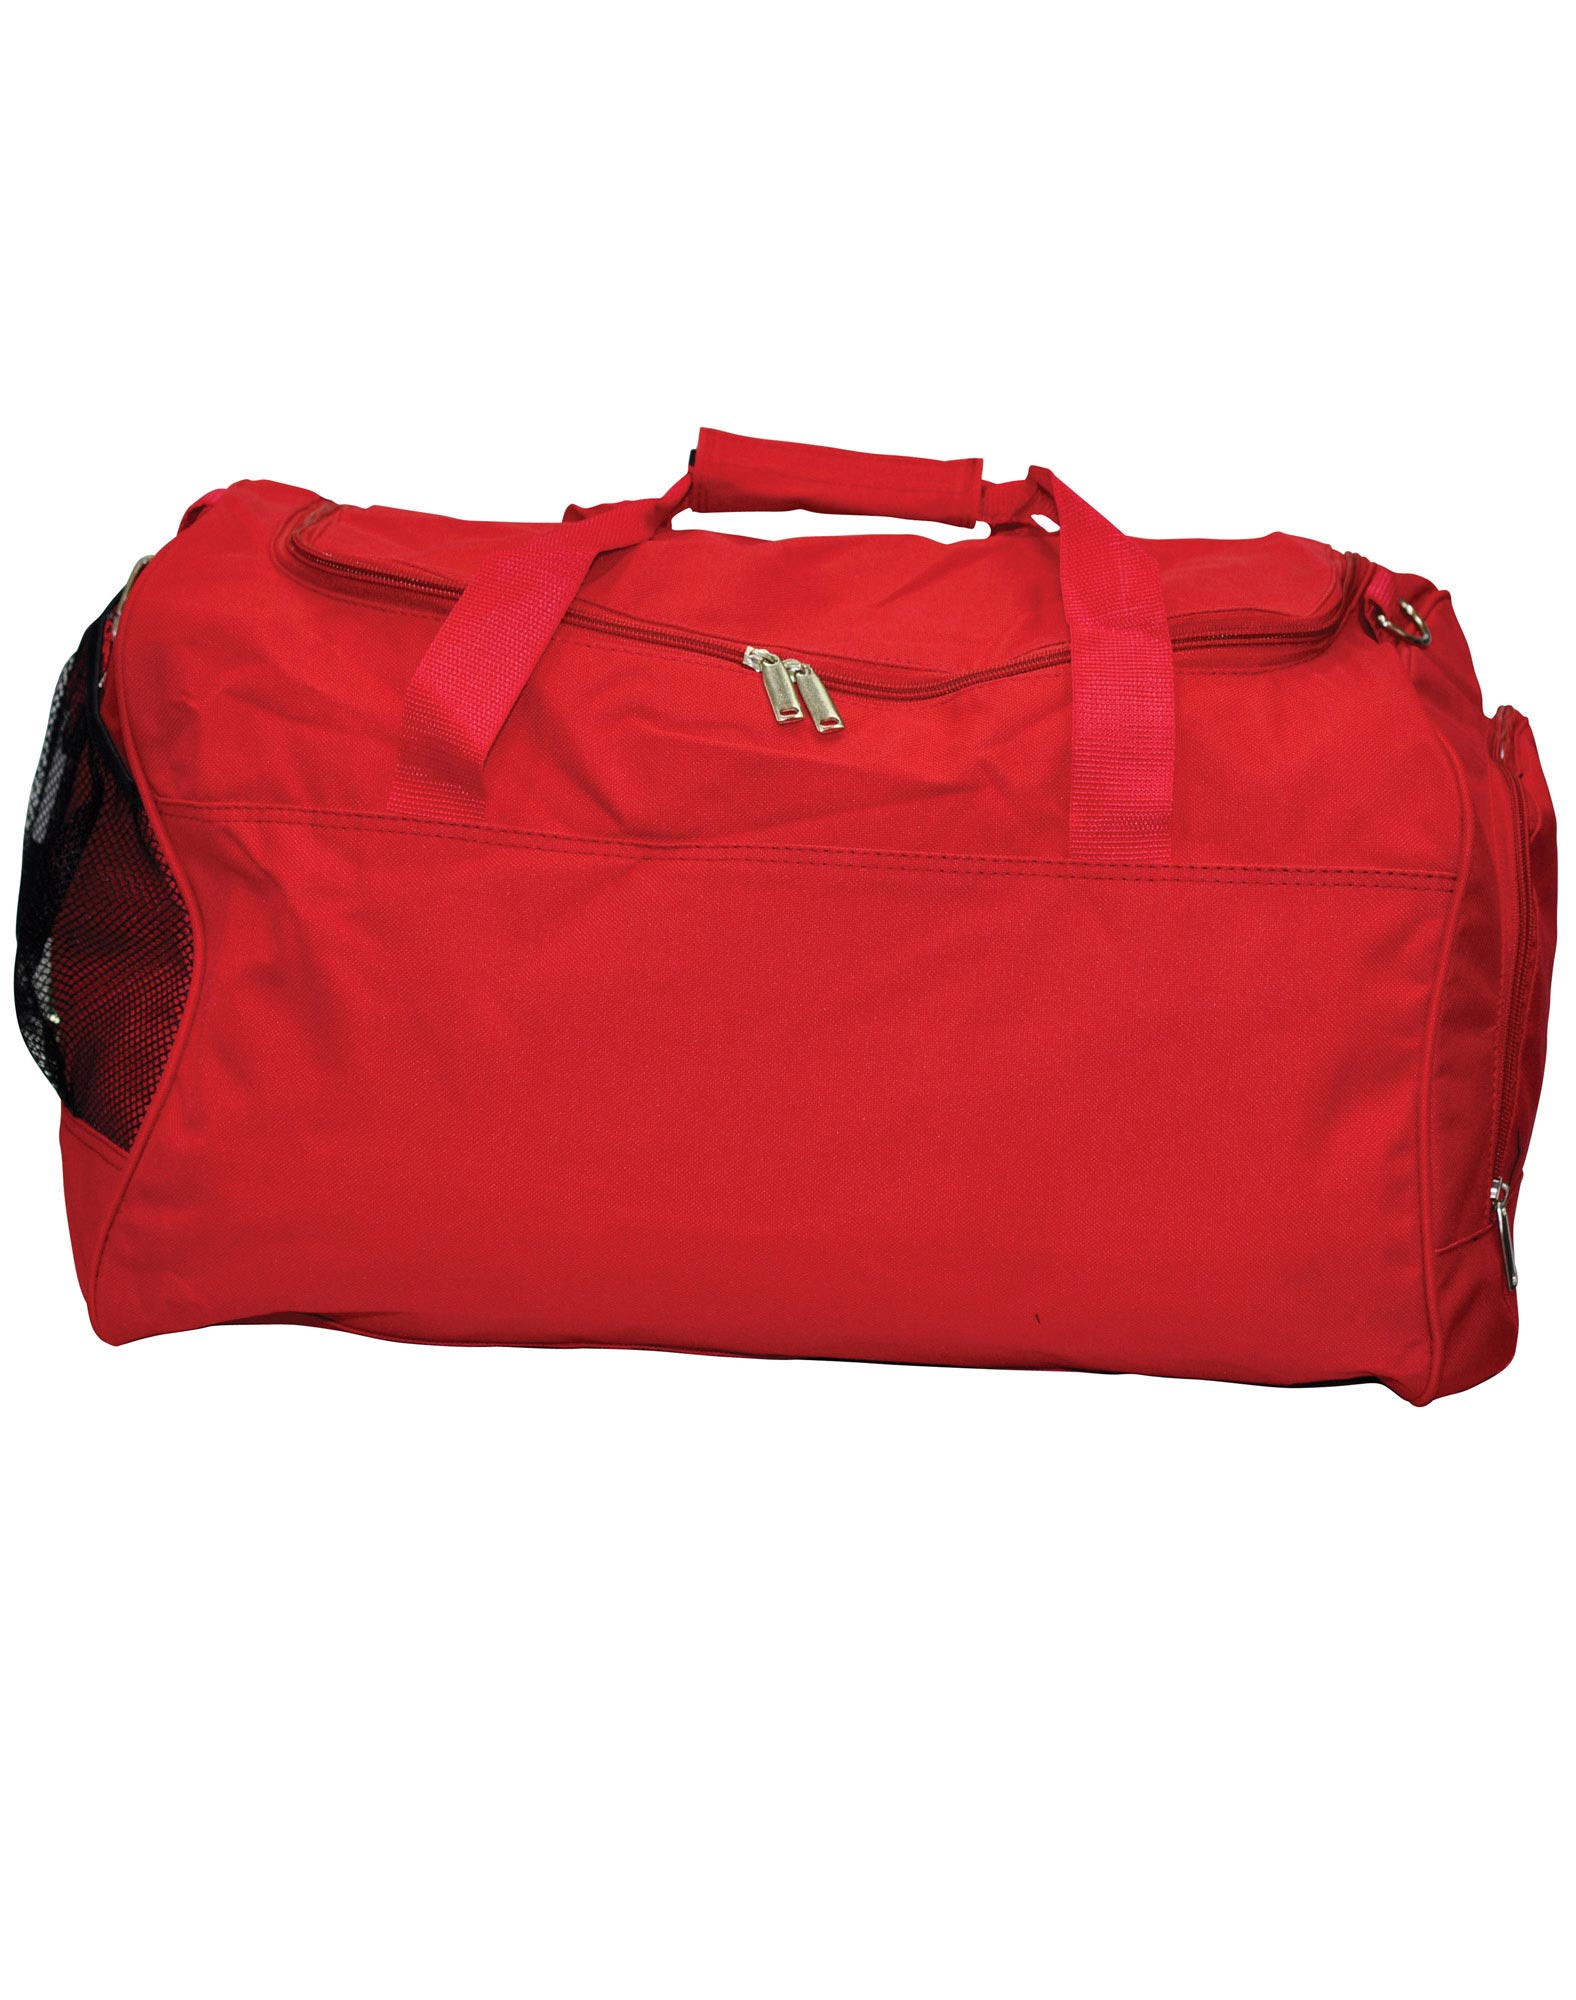 BASIC SPORT BAG WITH SHOE POCKET RED